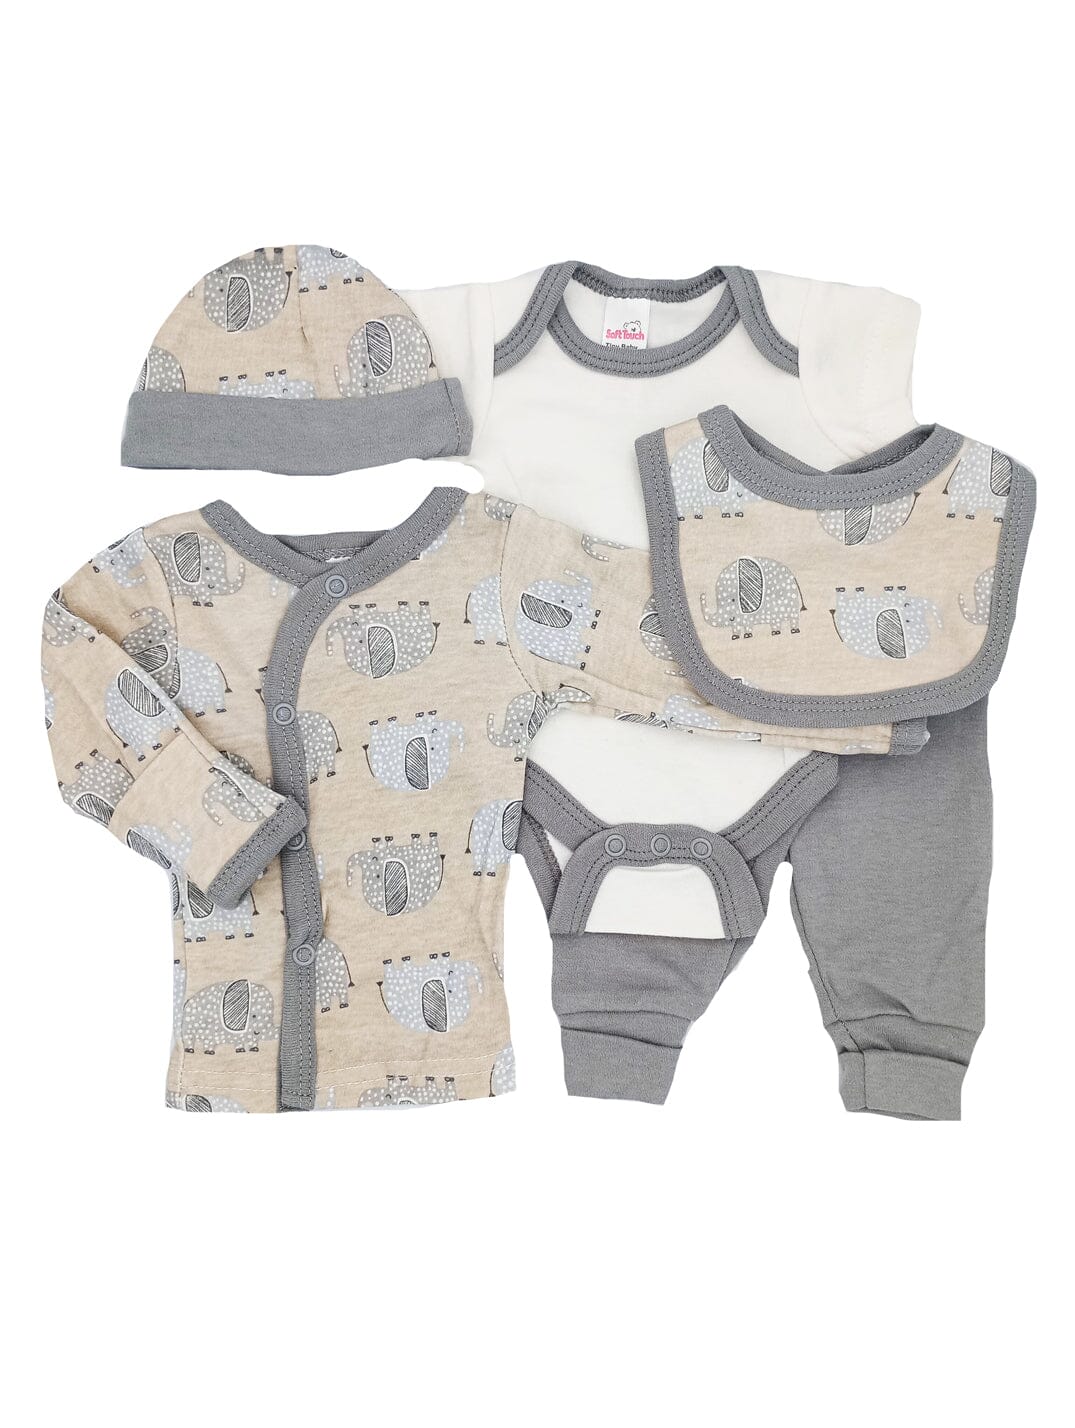 Elephant Print 5 piece set - Vest, Top, Trousers, Bib & Hat (4-7lbs) - Set - Soft Touch